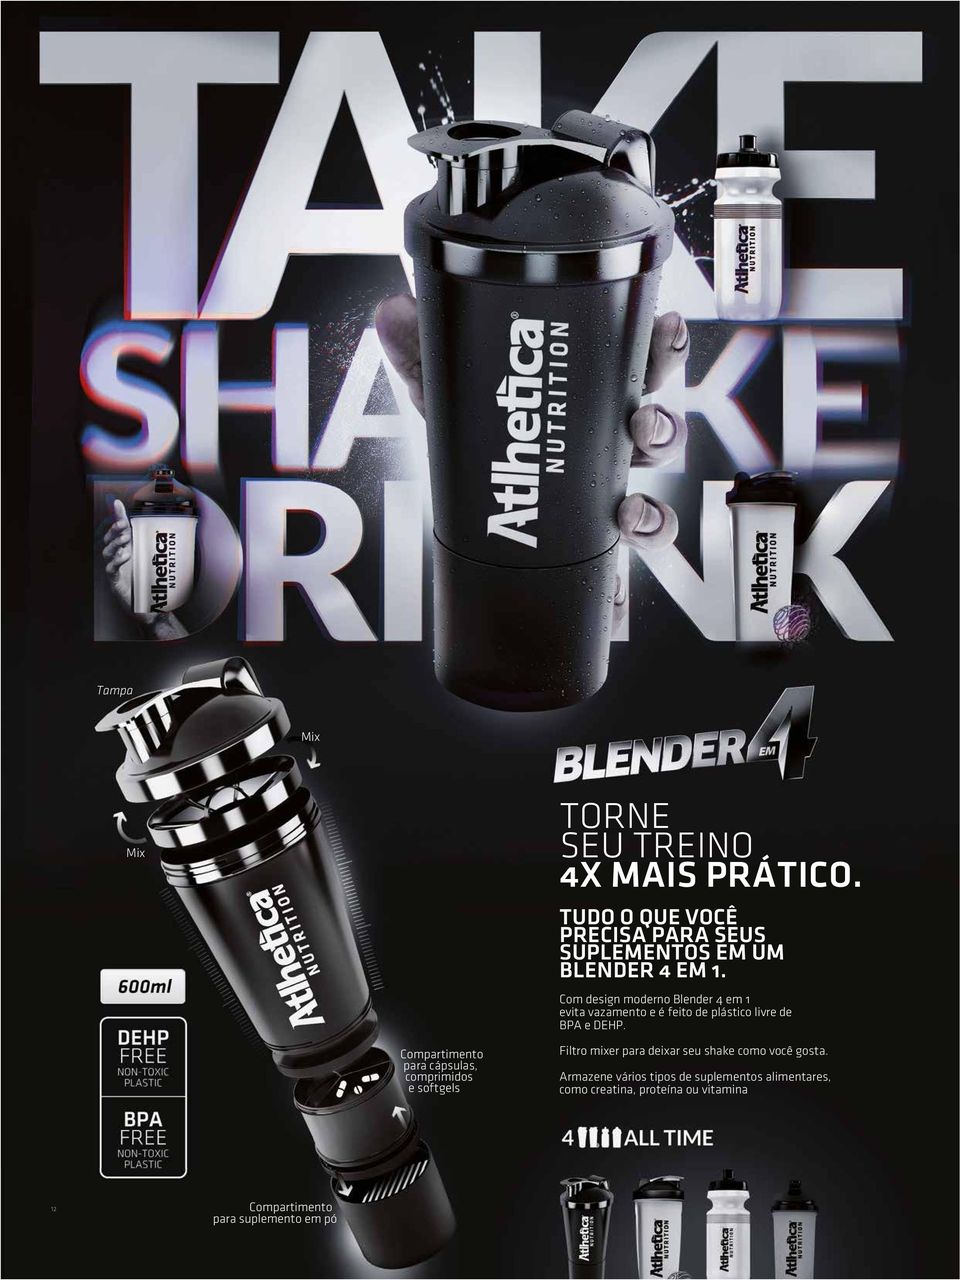 Com design moderno Blender 4 em 1 evita vazamento e é feito de plástico livre de BPA e DEHP.